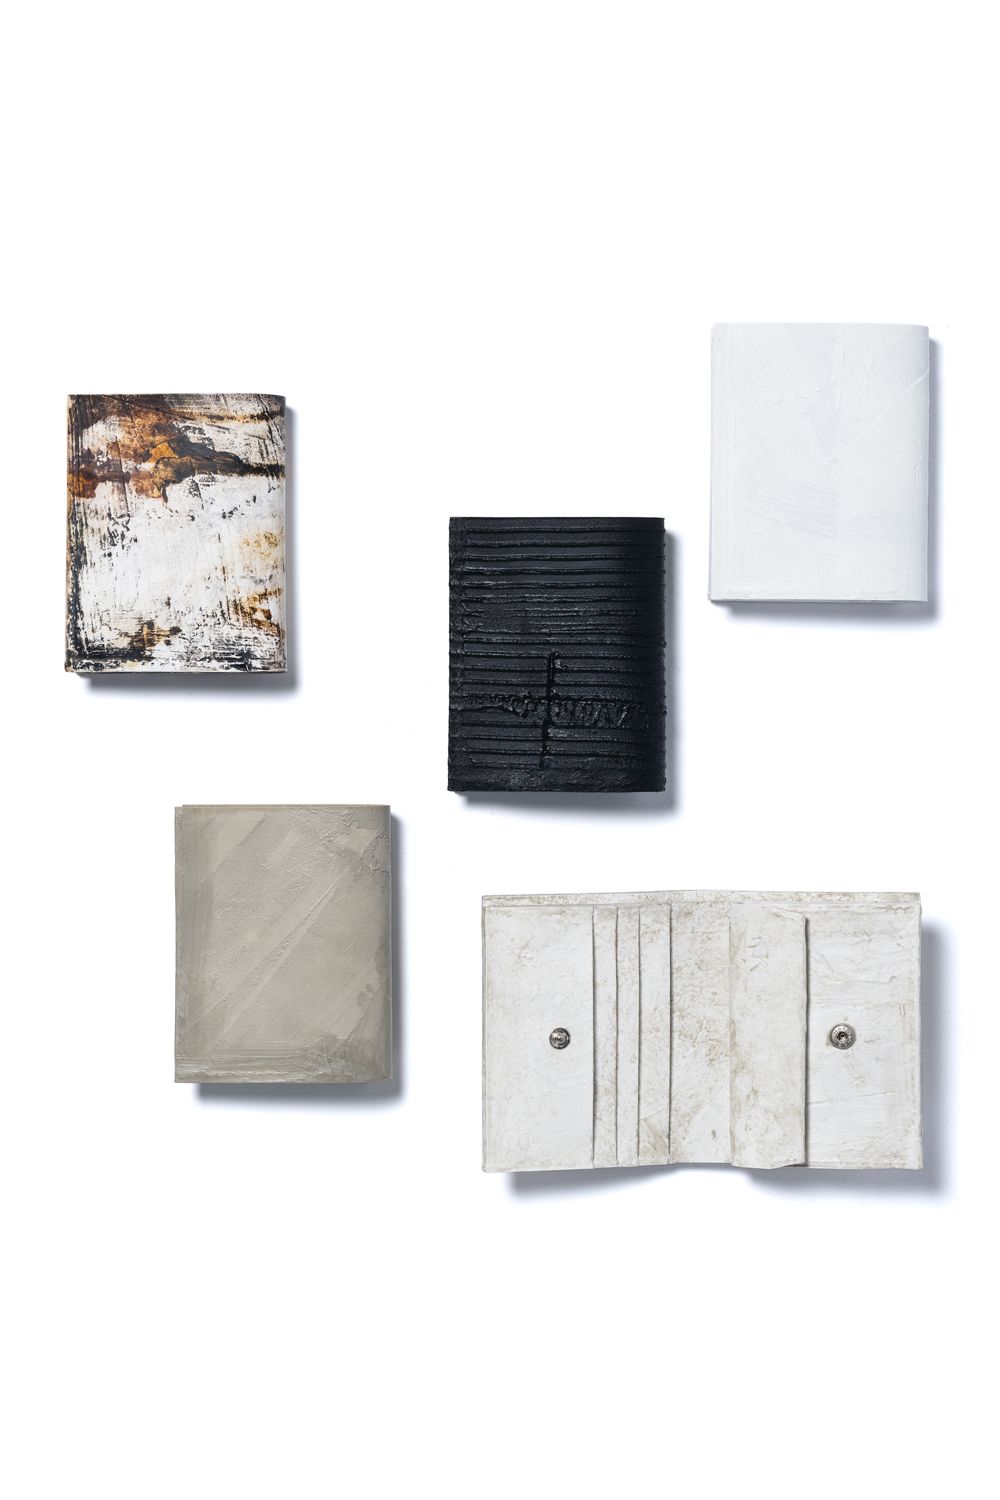 KAGARI YUSUKE - 【お取り寄せ可能】二つ折り財布 [黒い壁